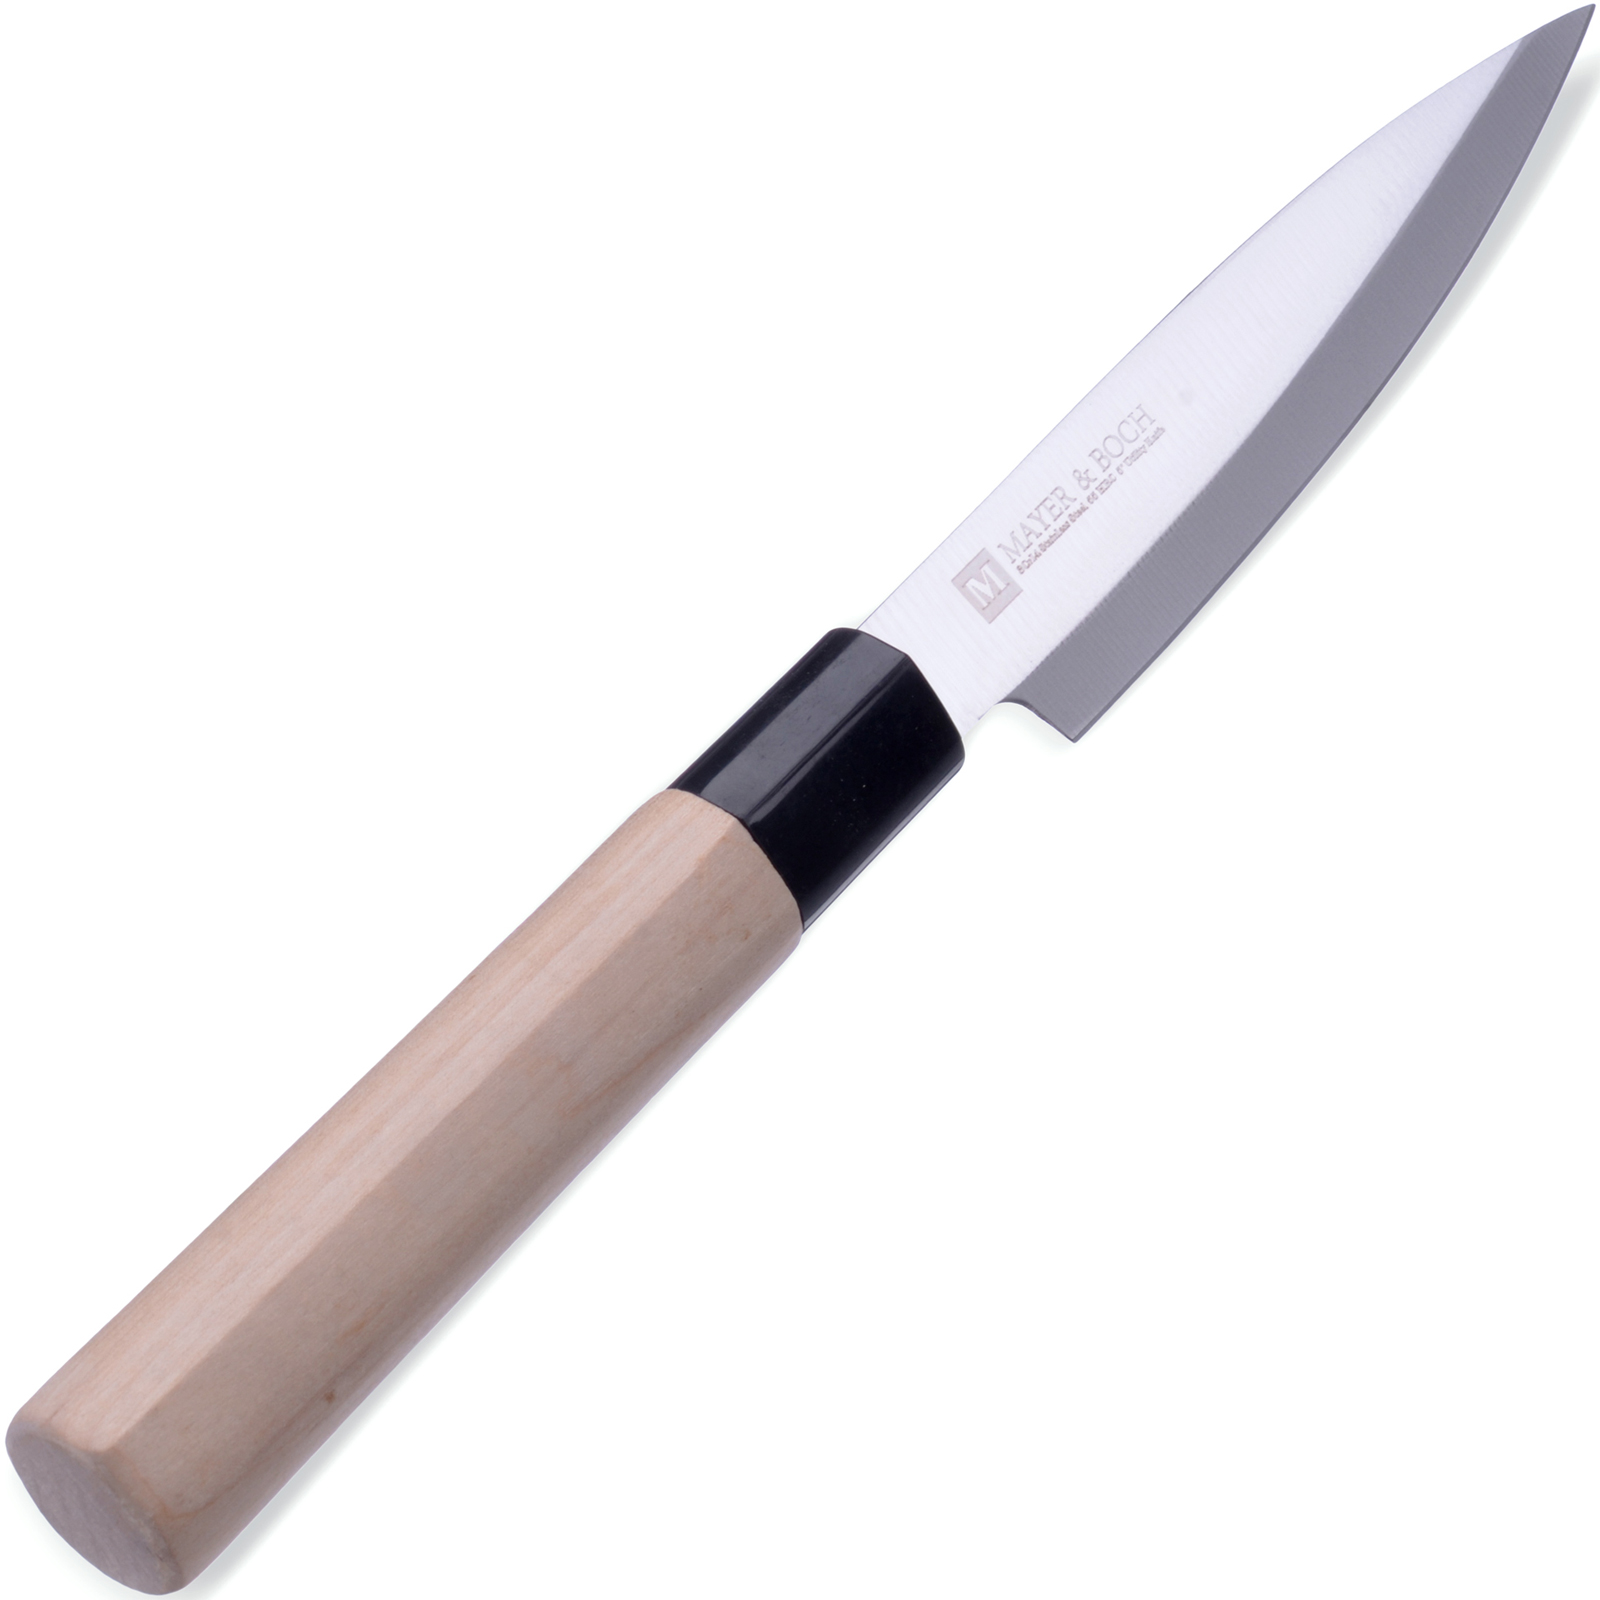 фото Нож универсальный Mayer & Boch Kyoto, цвет: серебристый, бежевый, длина лезвия 13,5 см